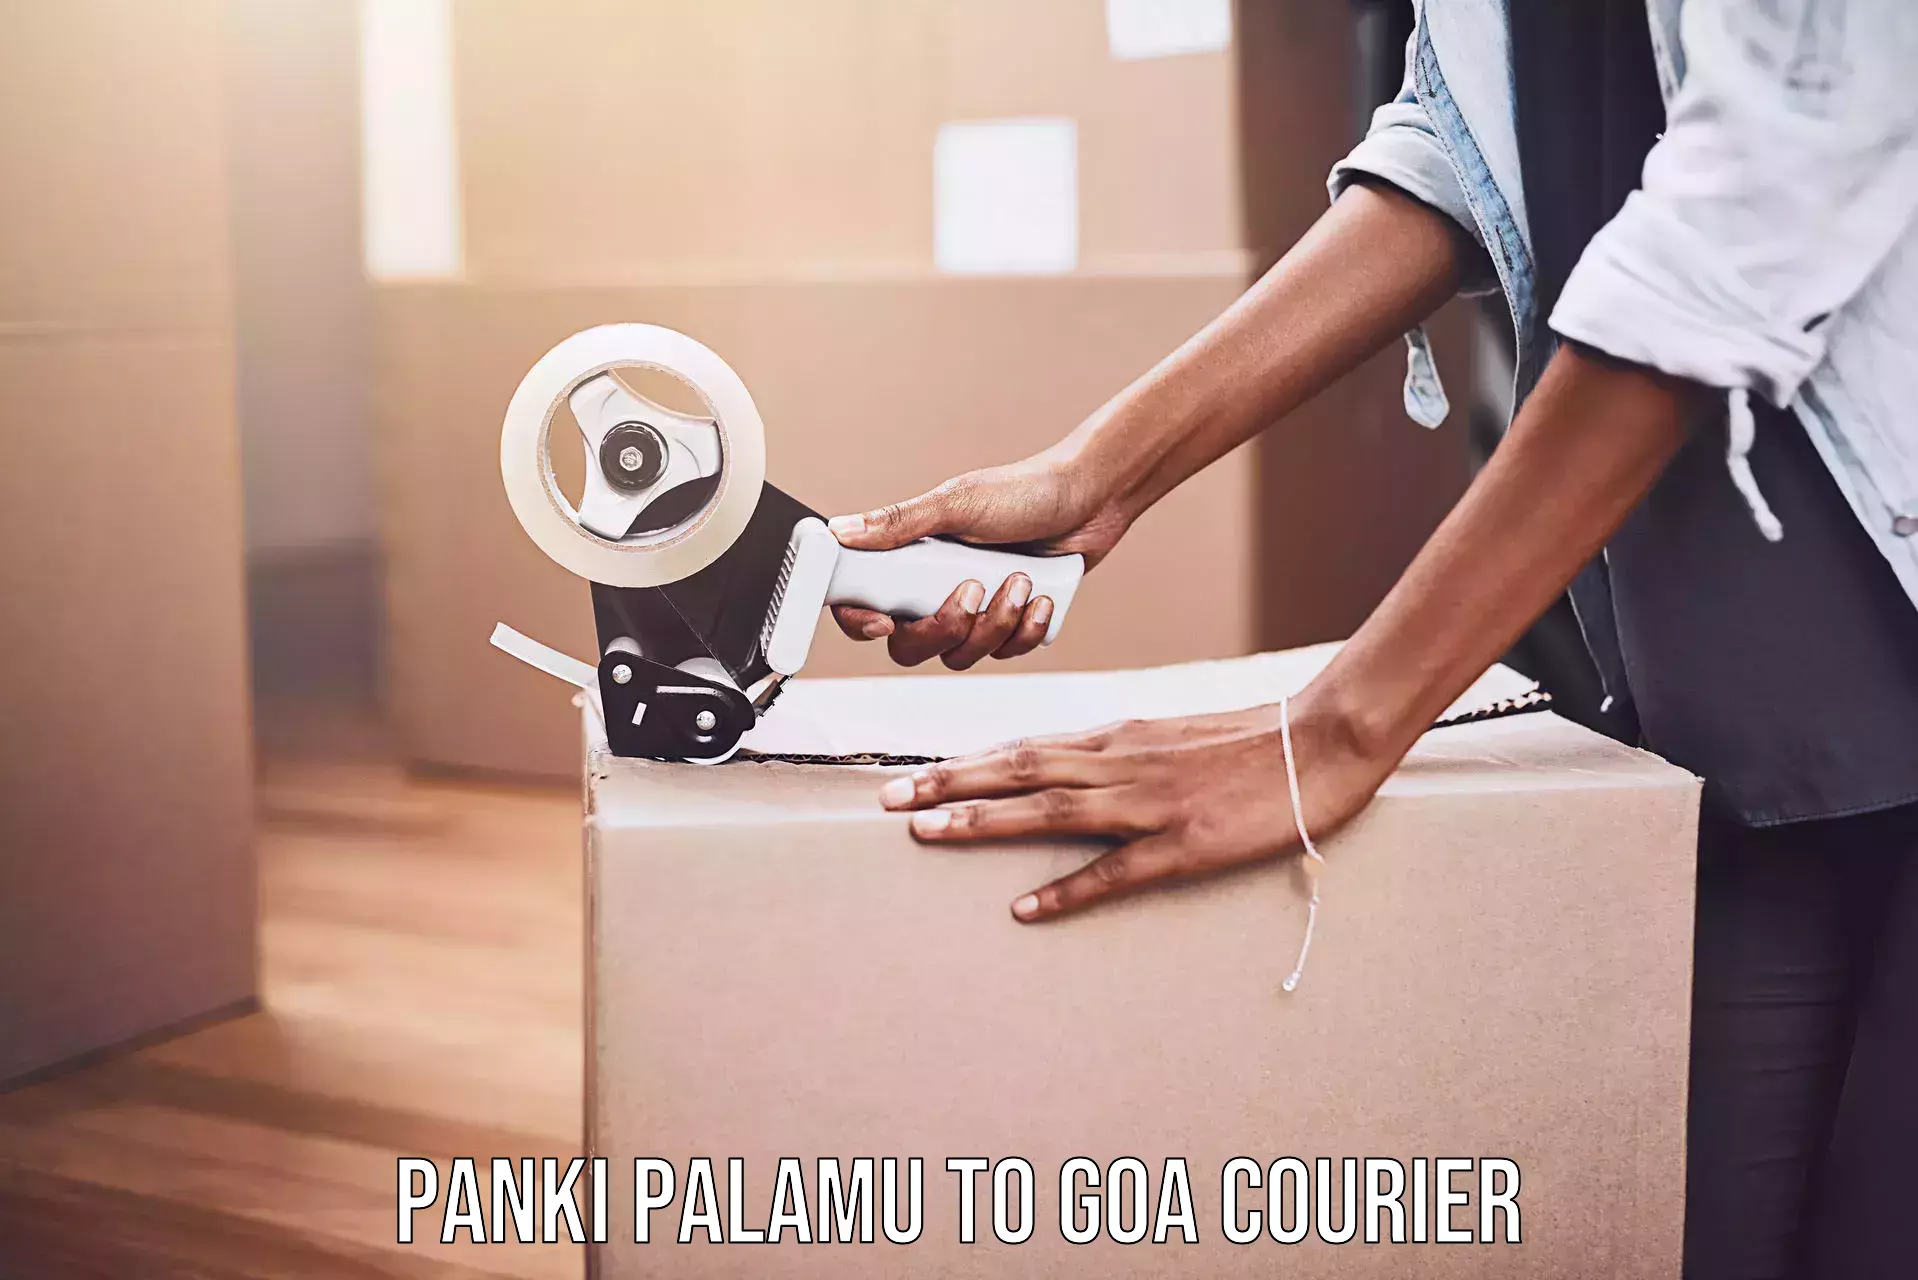 Air courier services Panki Palamu to Panjim